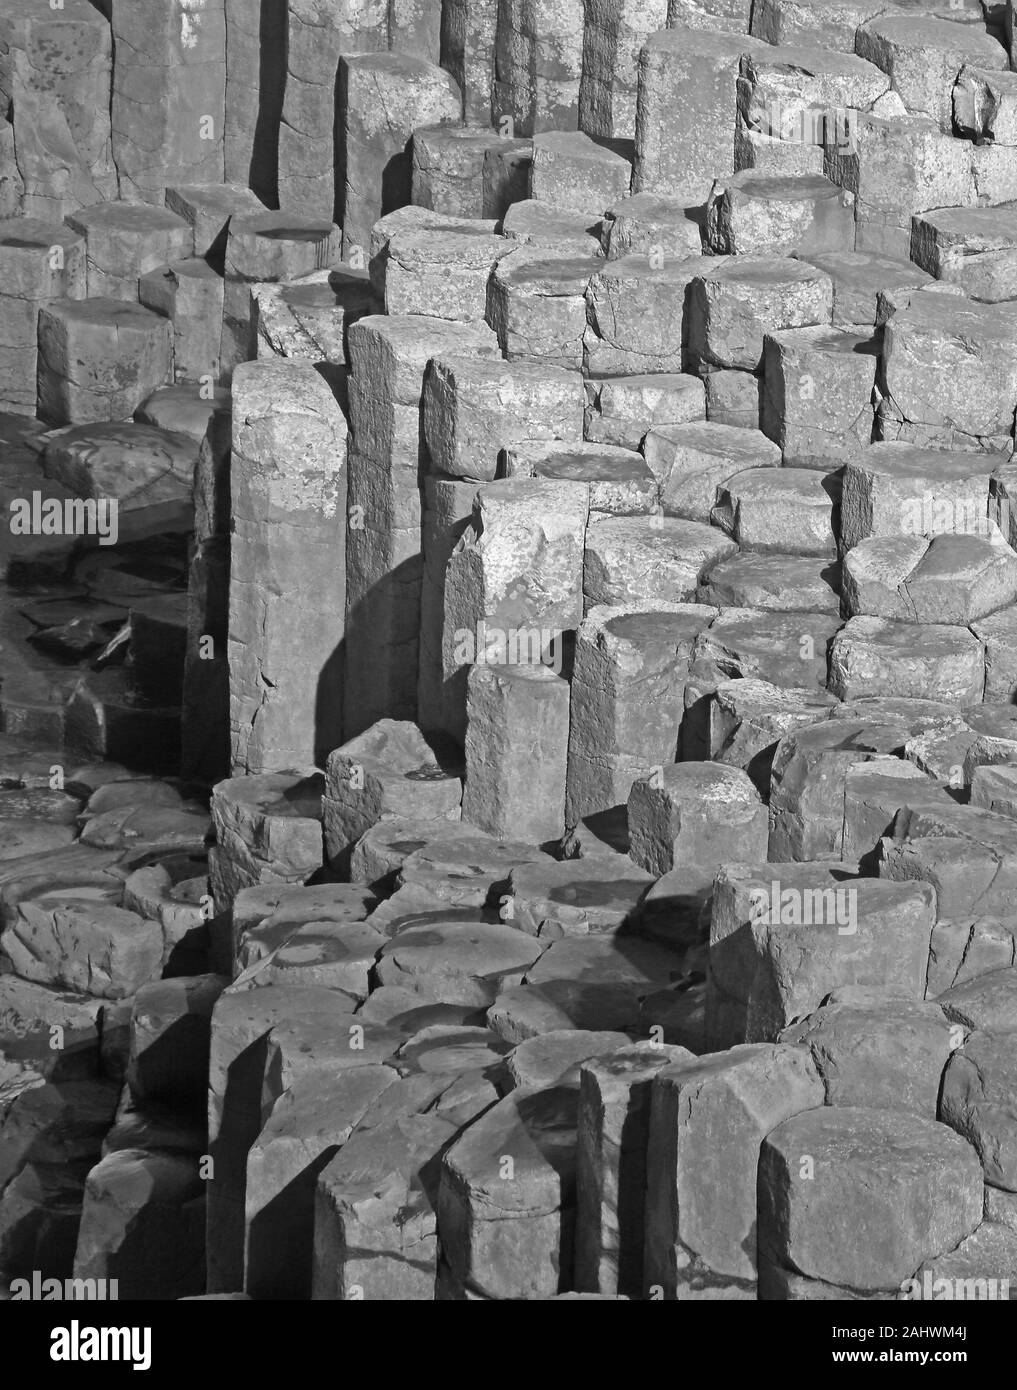 Colonnes de basalte massif et des tremplins de la Giant's Causeway en noir et blanc, comté d'Antrim, en Irlande du Nord, Royaume-Uni. Banque D'Images